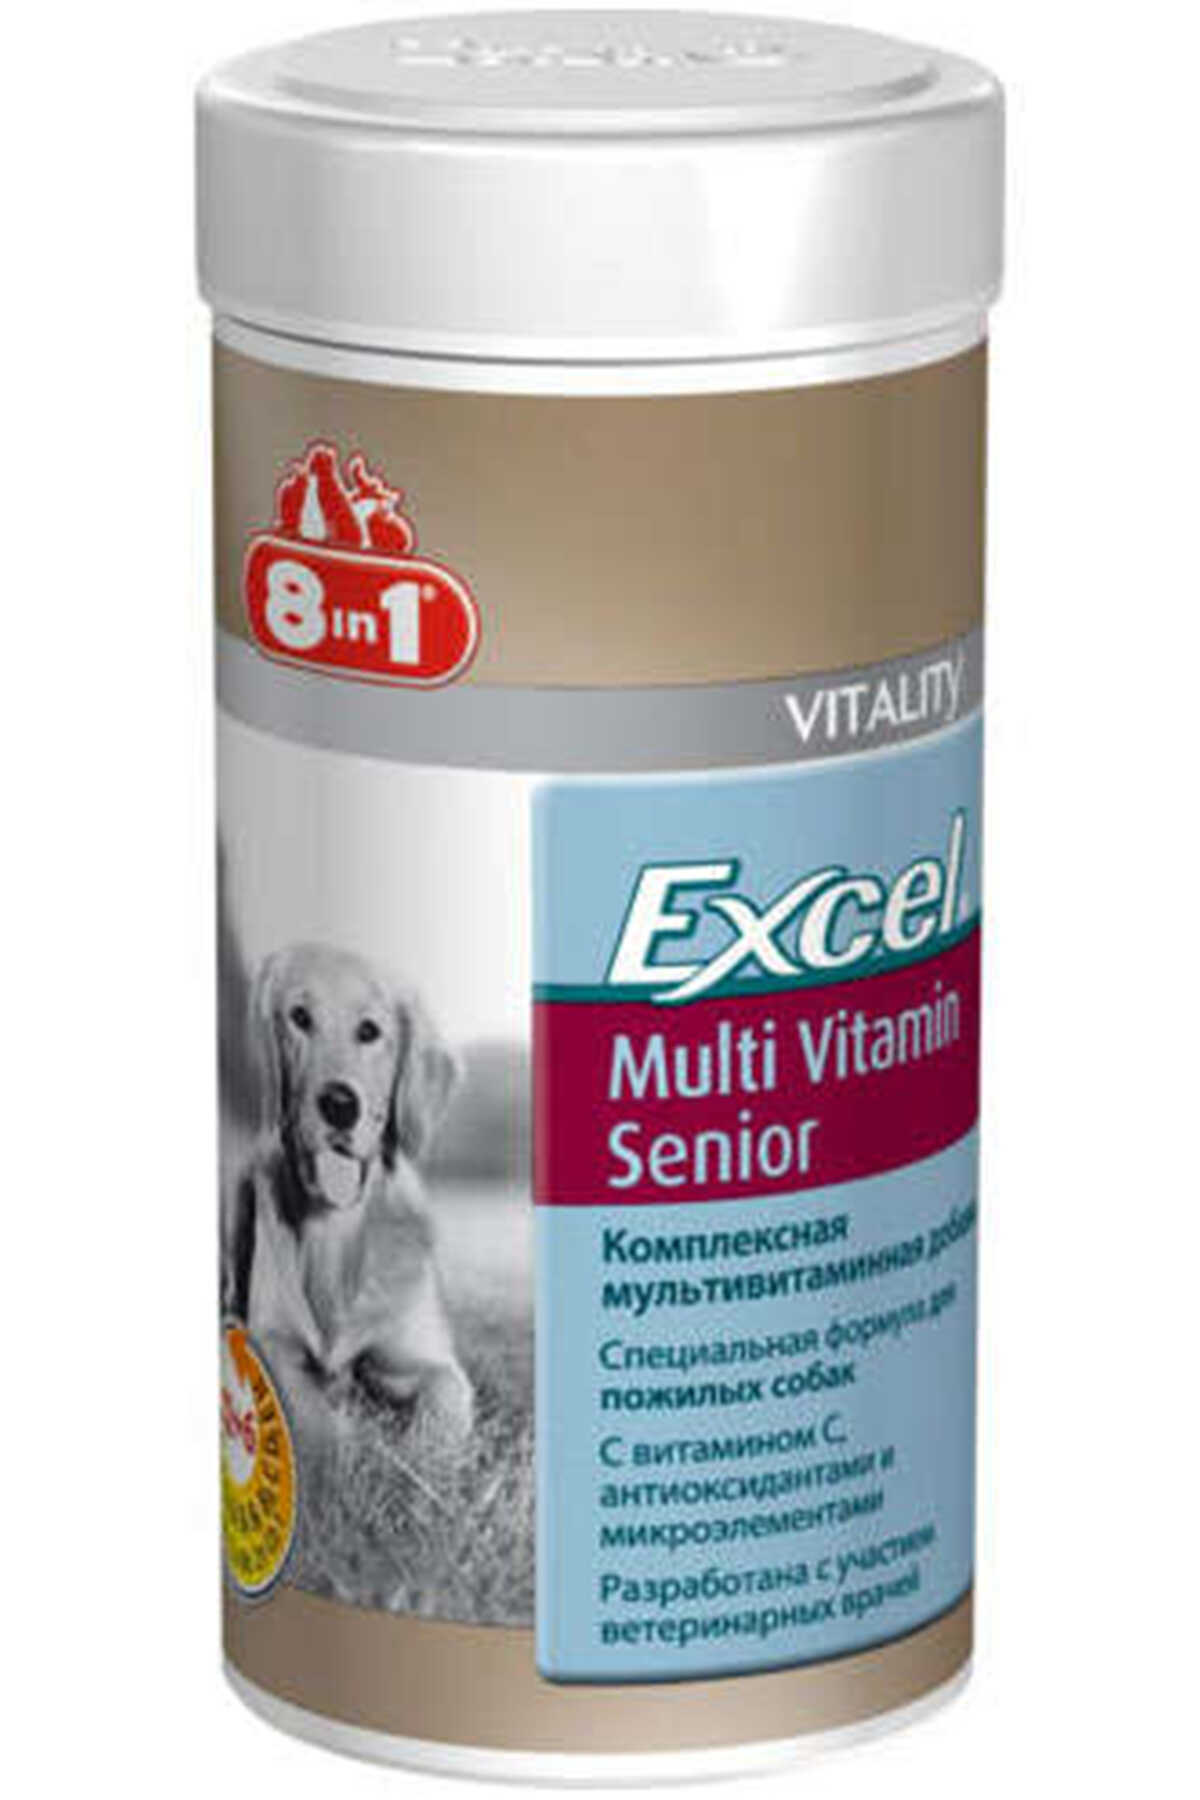 8in1 Excel Yaşlı Köpekler için Multivitamin Tablet 70 Adet